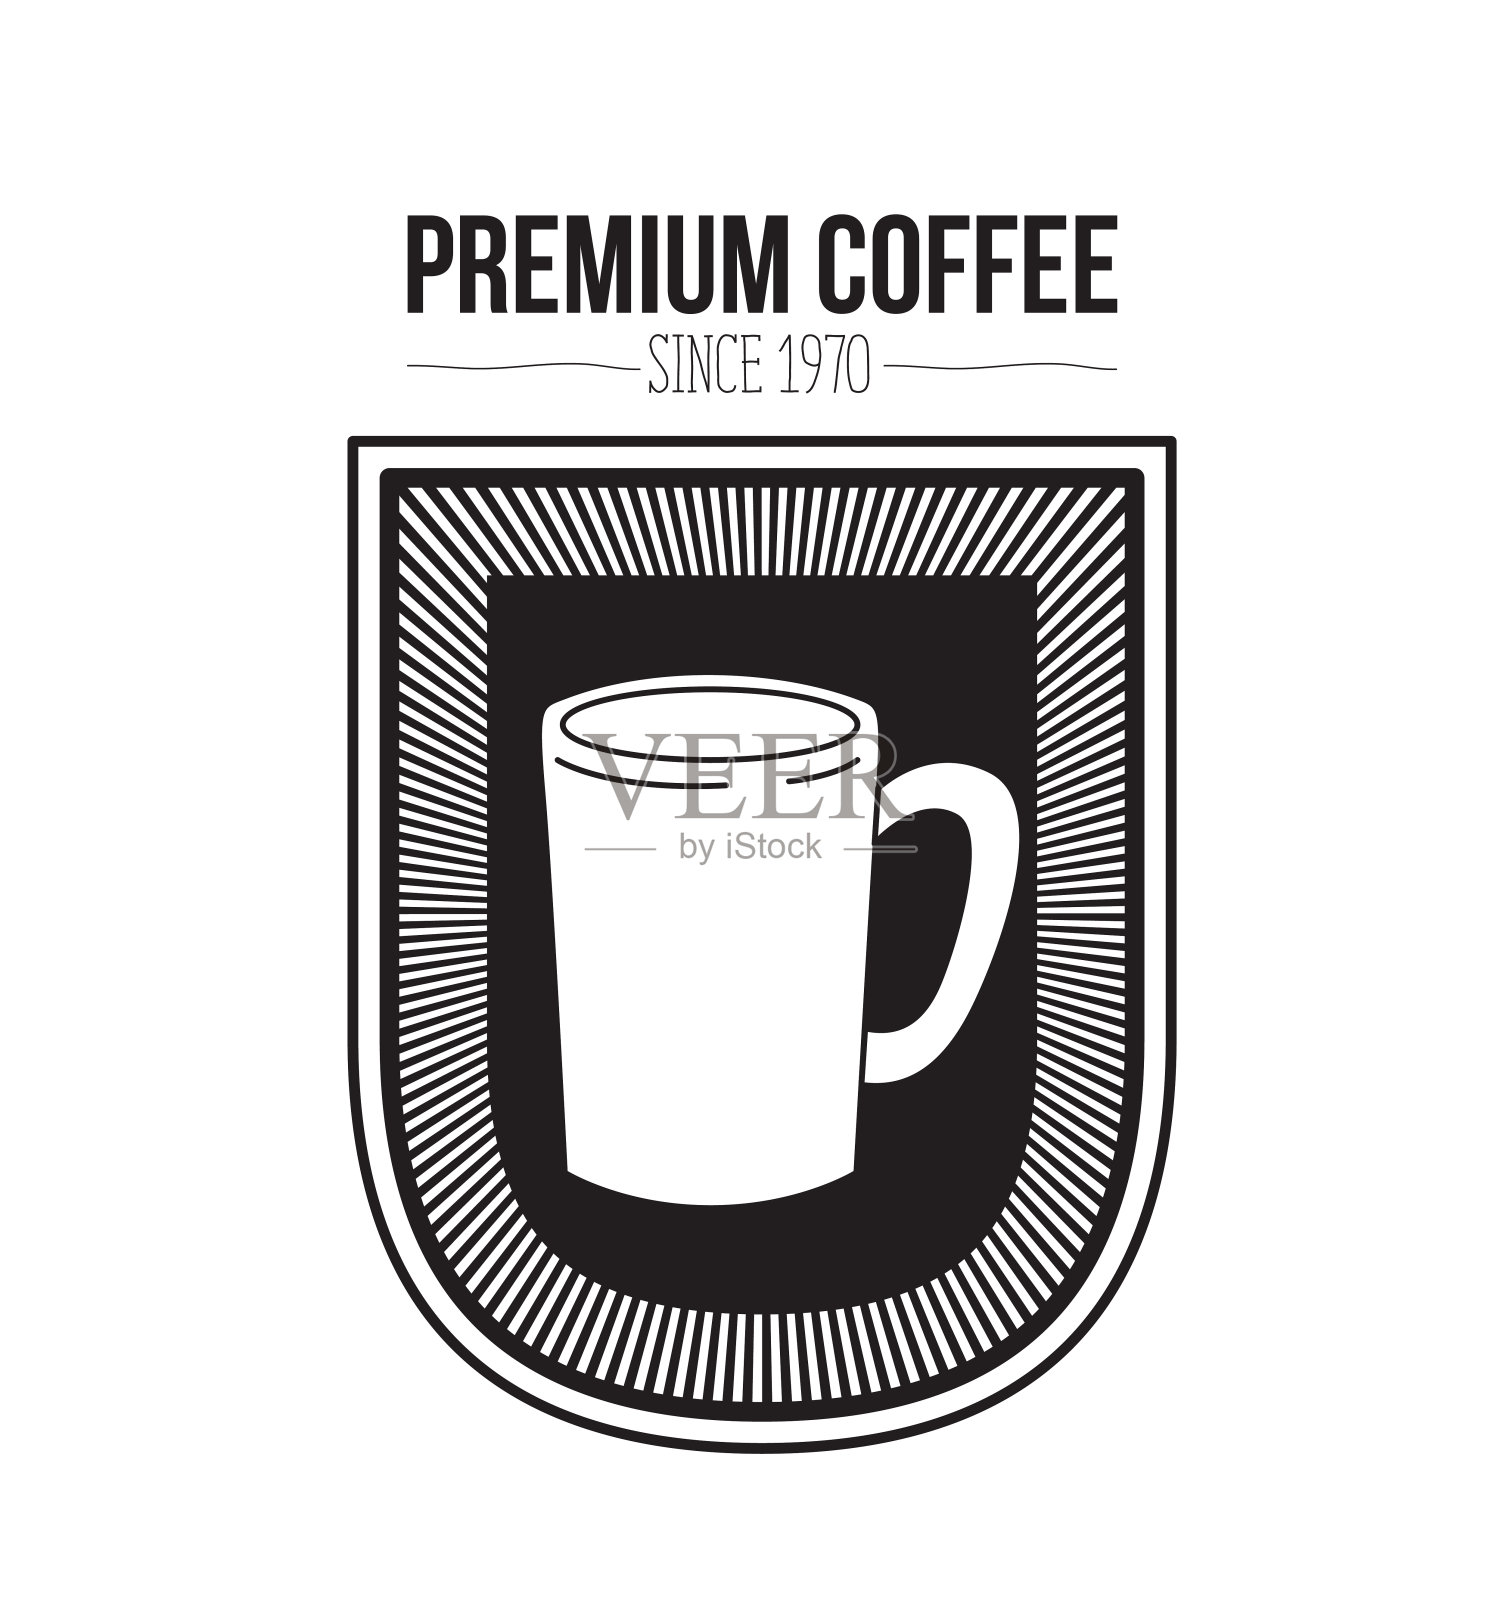 白色背景的文字优质咖啡豆自1970年和标志设计装饰徽章与剪影马克杯插画图片素材